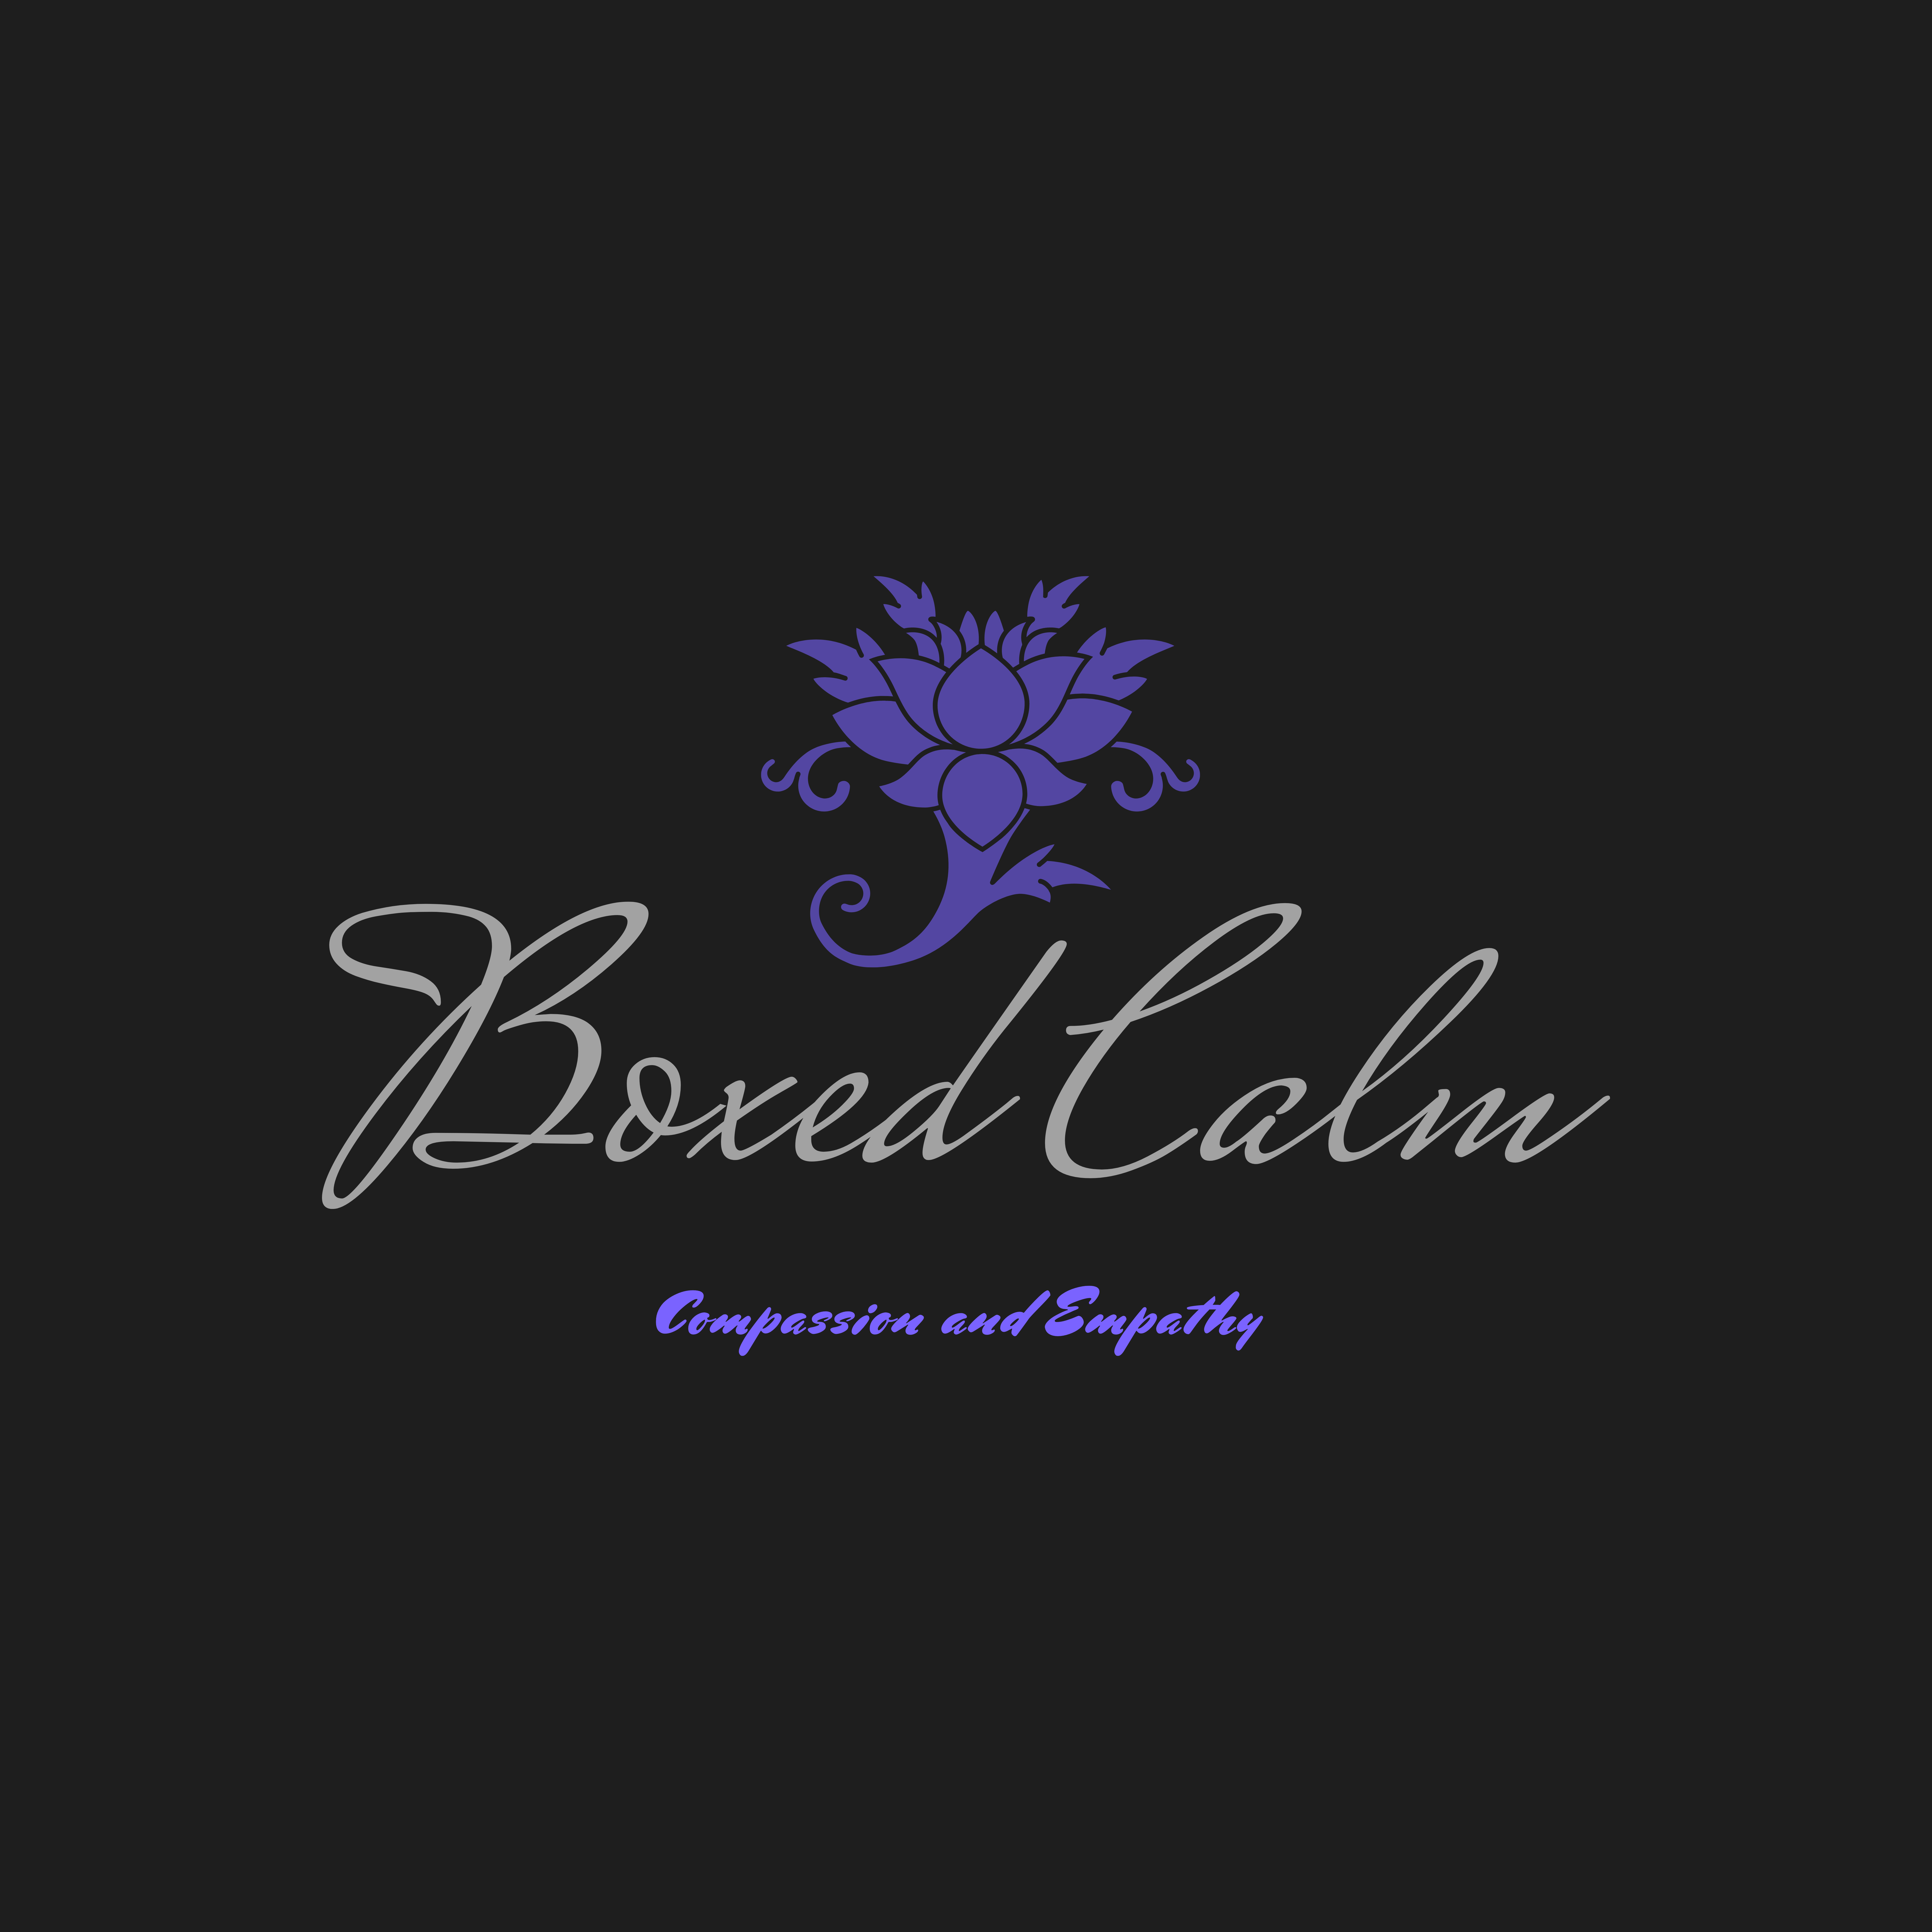 Boxed Calm Logo